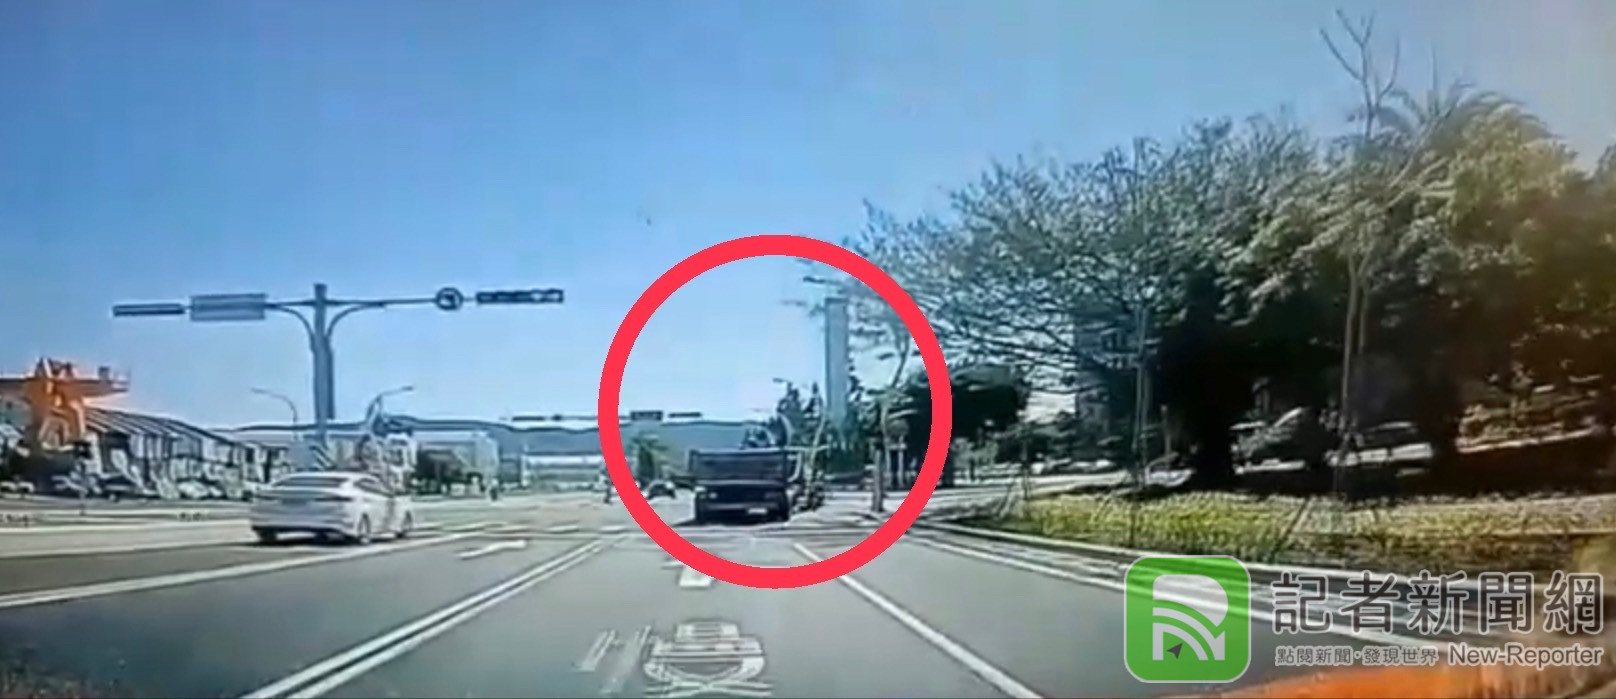 (驚悚片) 曳引車疑突右轉與直行機車擦撞 騎士噴飛亡